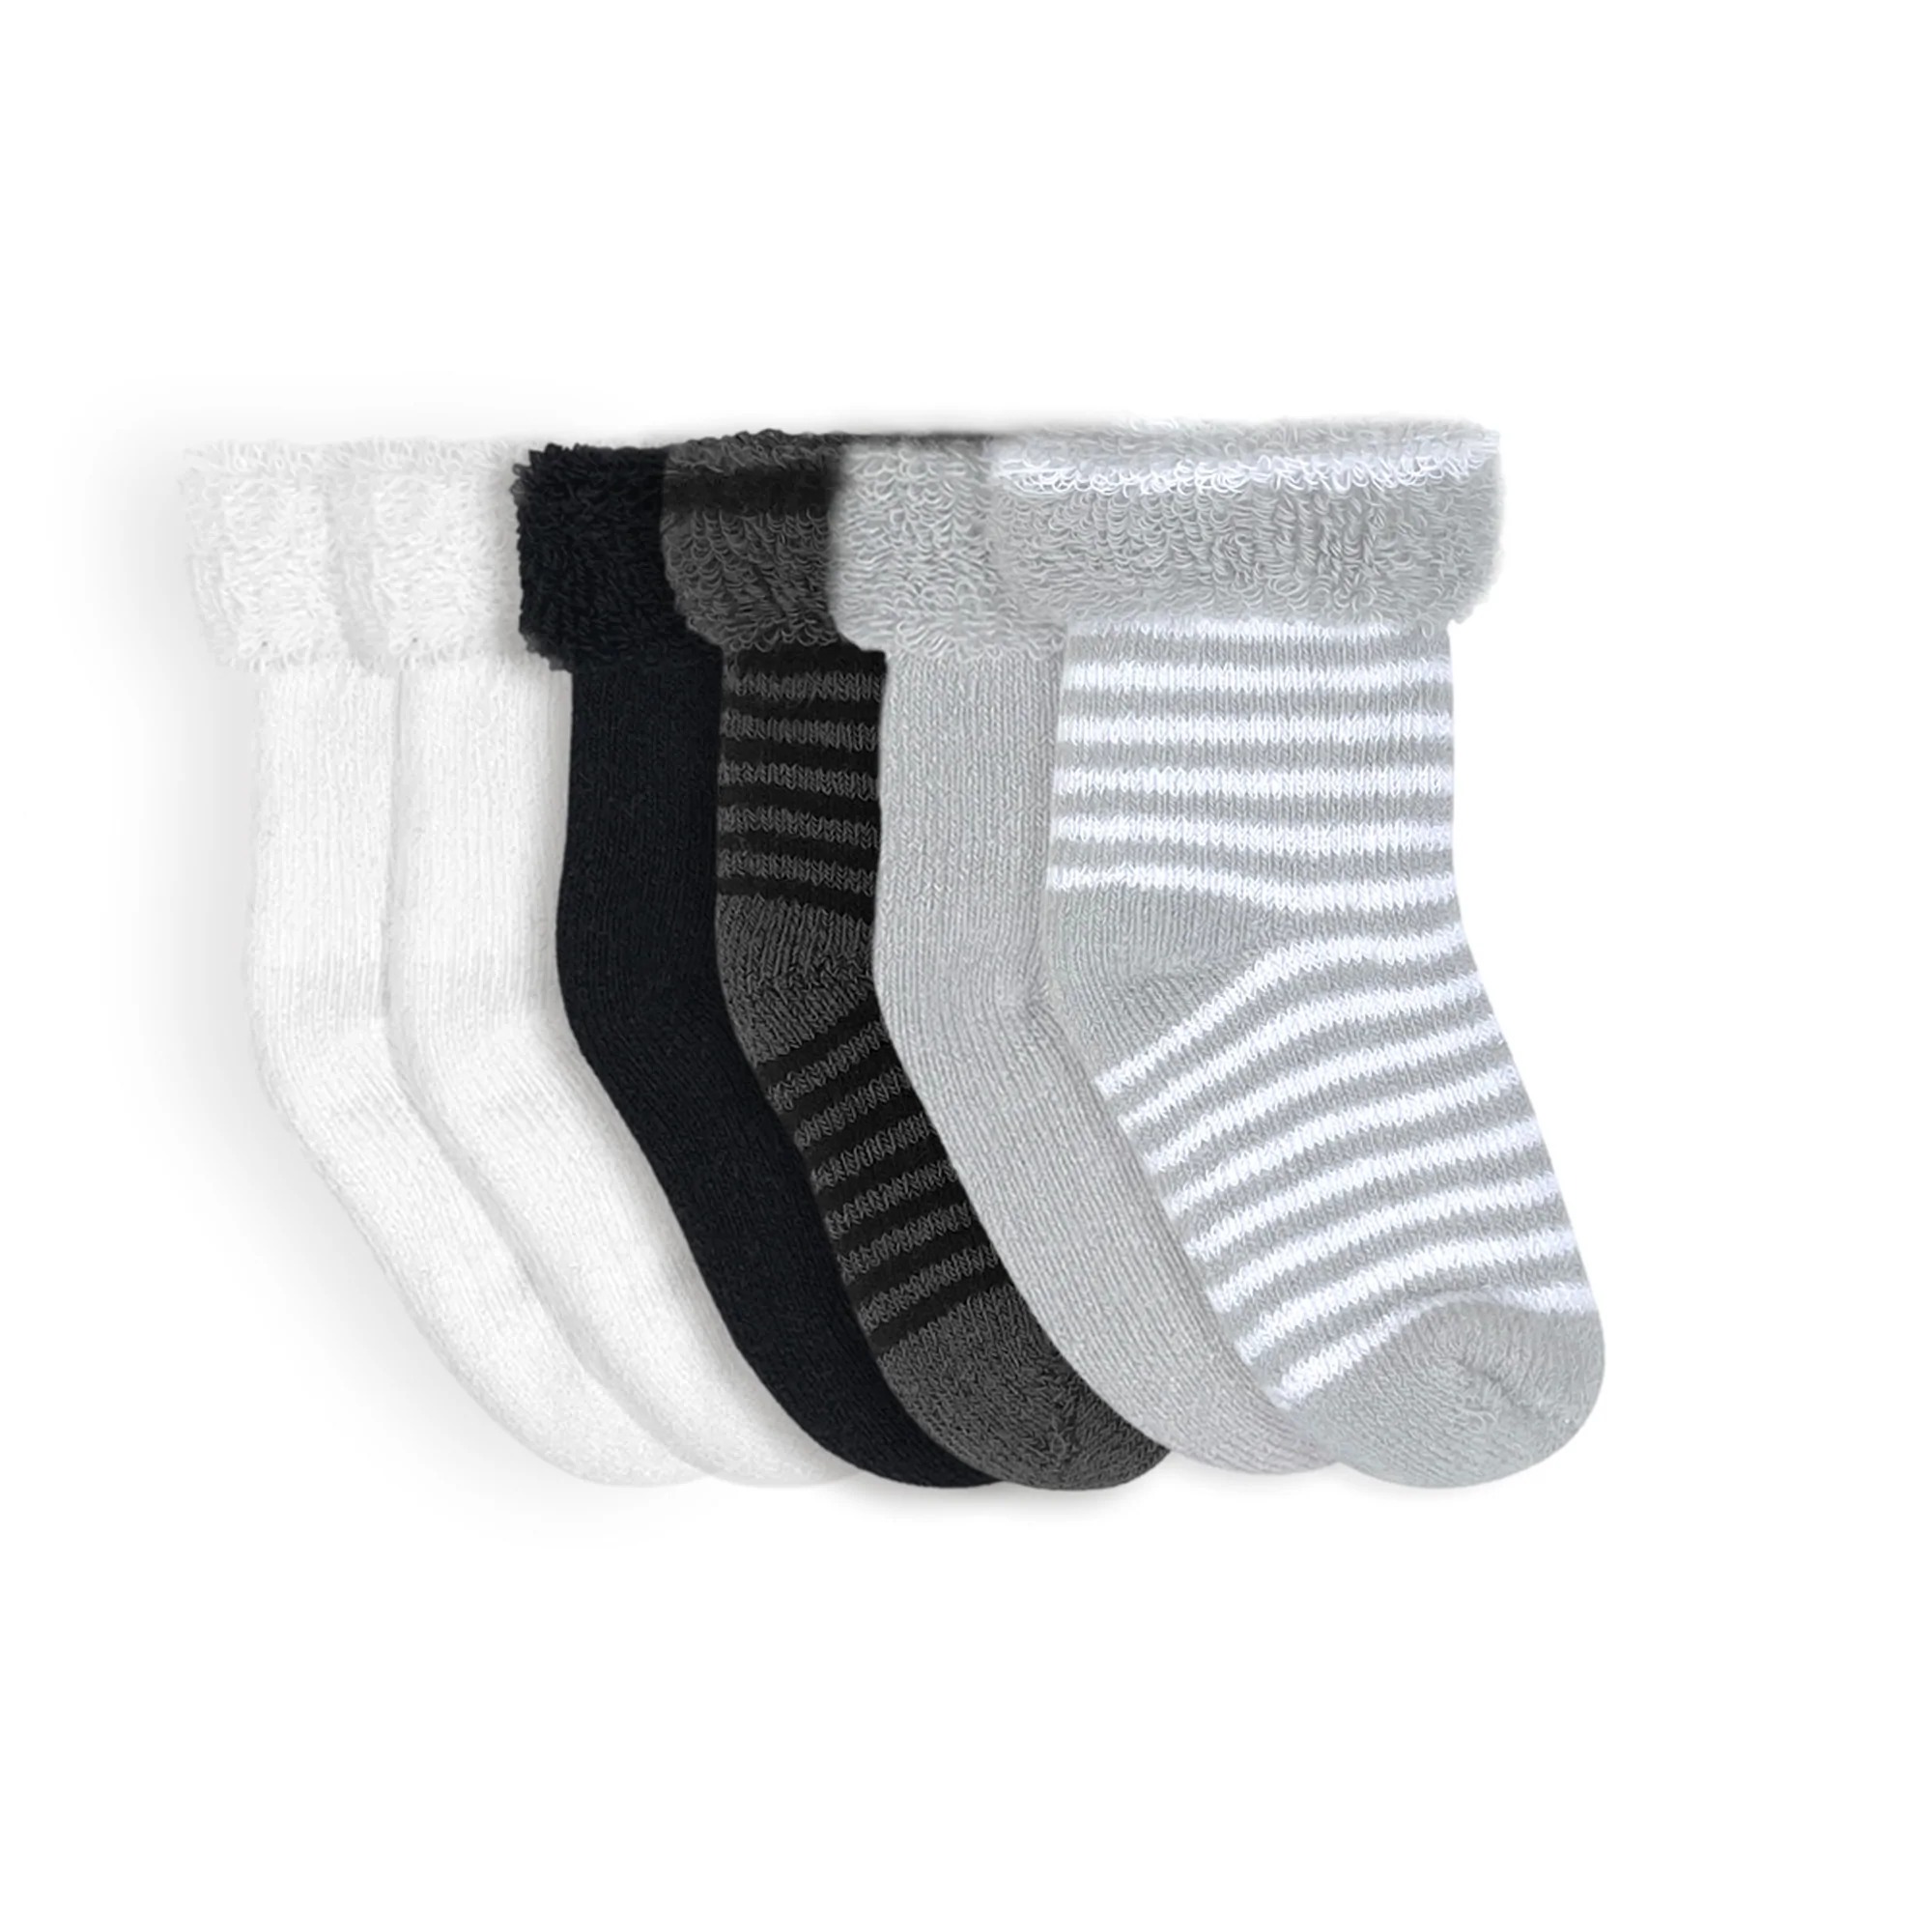 Kushies Terry Newborn Socks 6 Pack - Grey - 0-3 Months